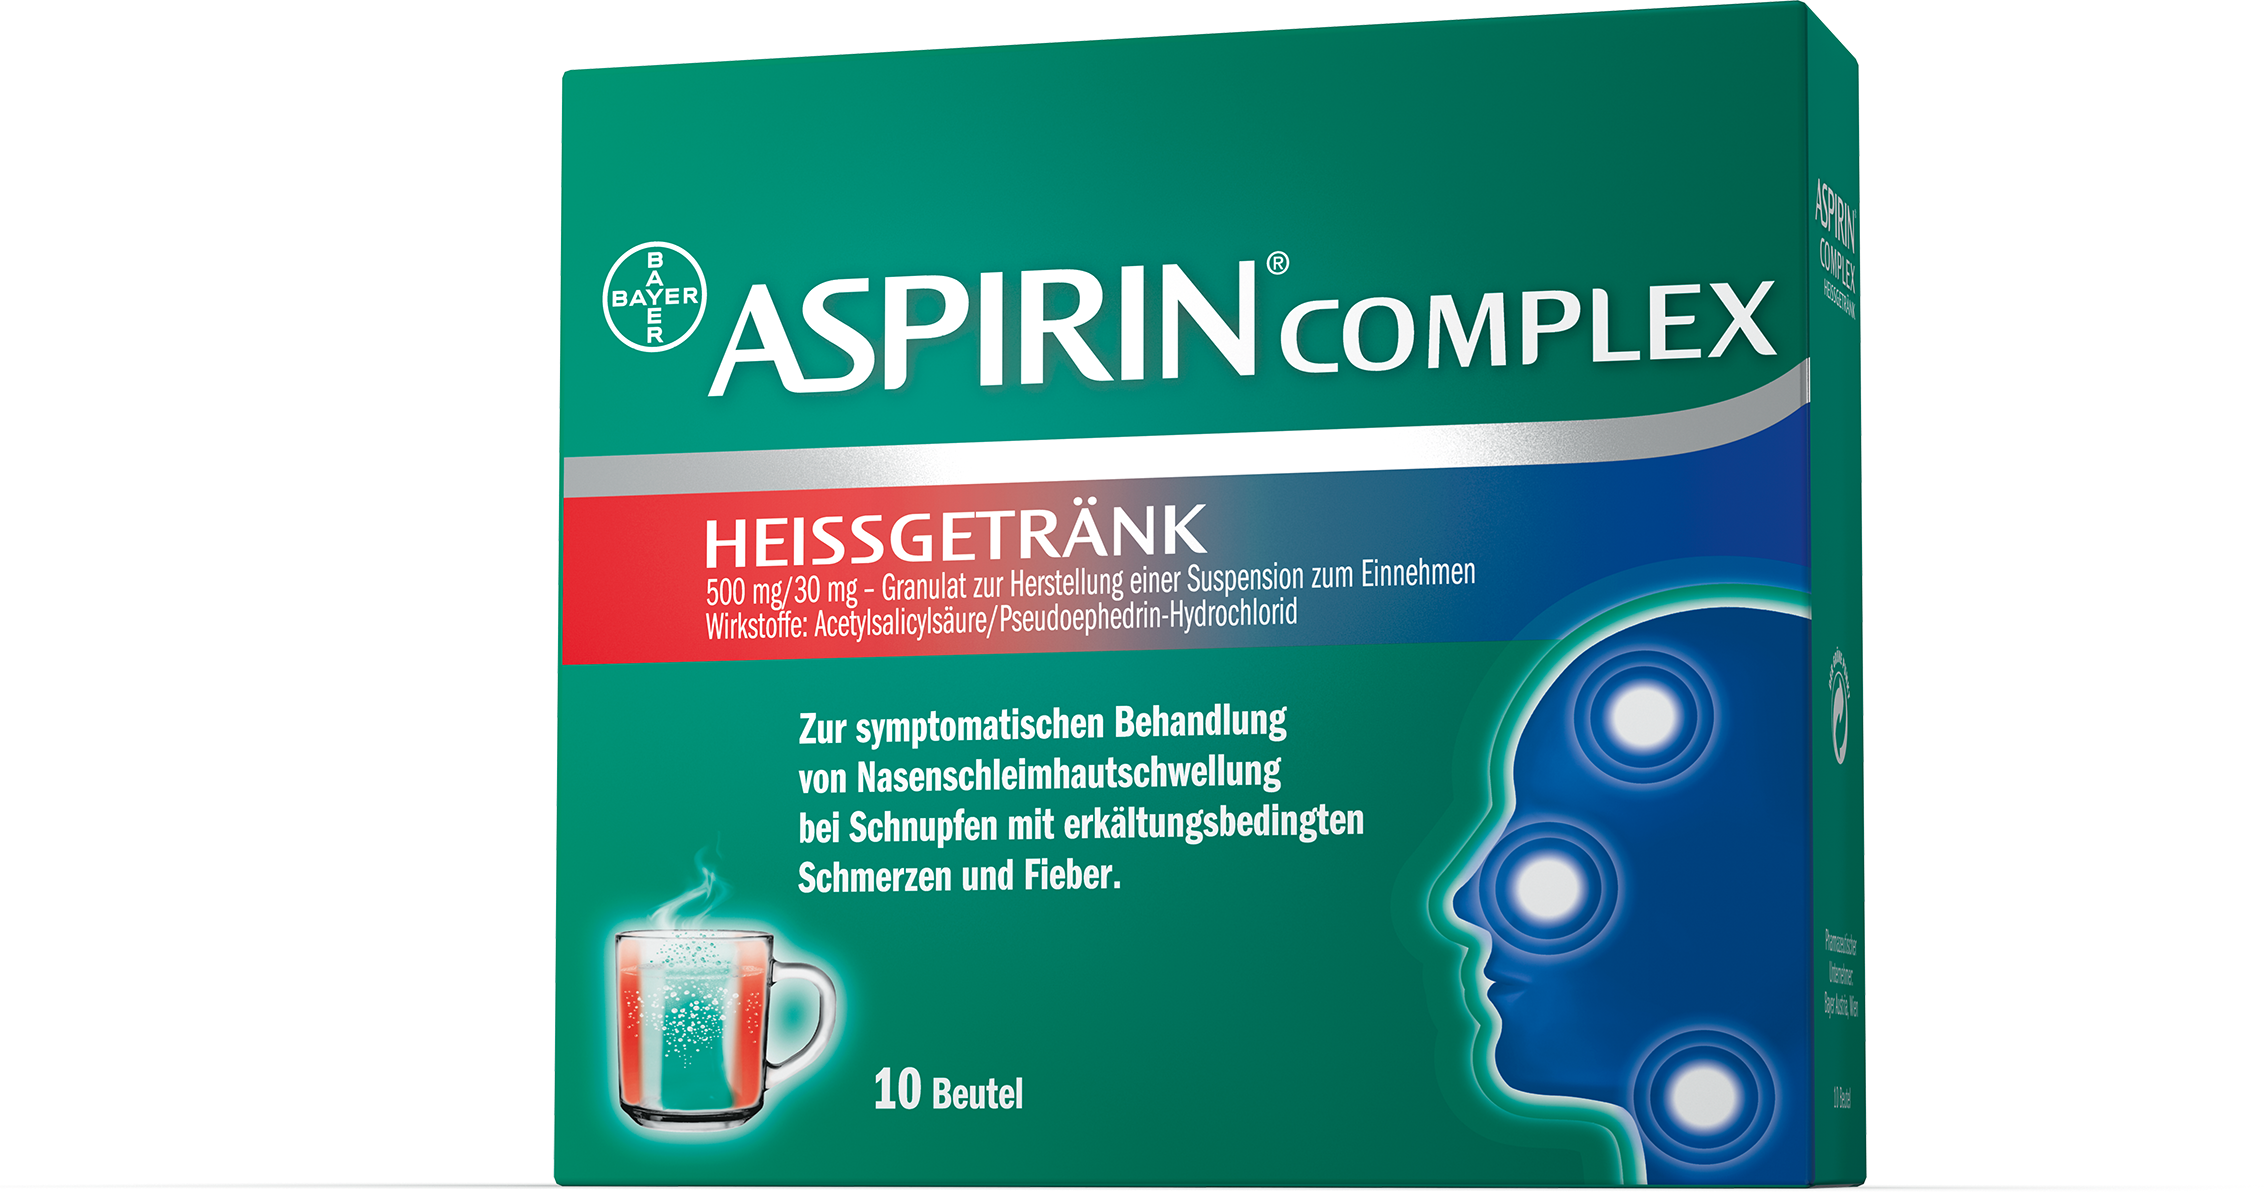 Aspirin Complex - Heißgetränk 500 mg/30 mg Granulat zur Herstellung einer Suspension zum Einnehmen